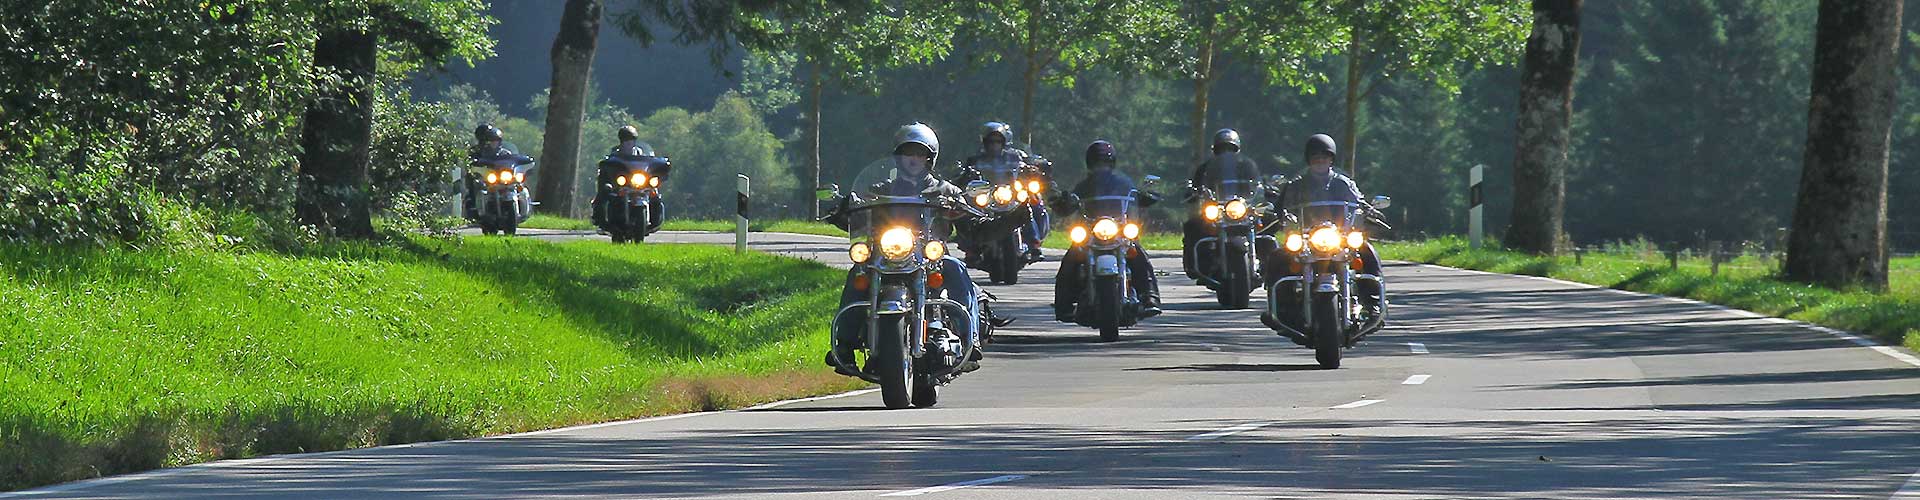 Reuthers Motorradreisen auf Harley-Davidson